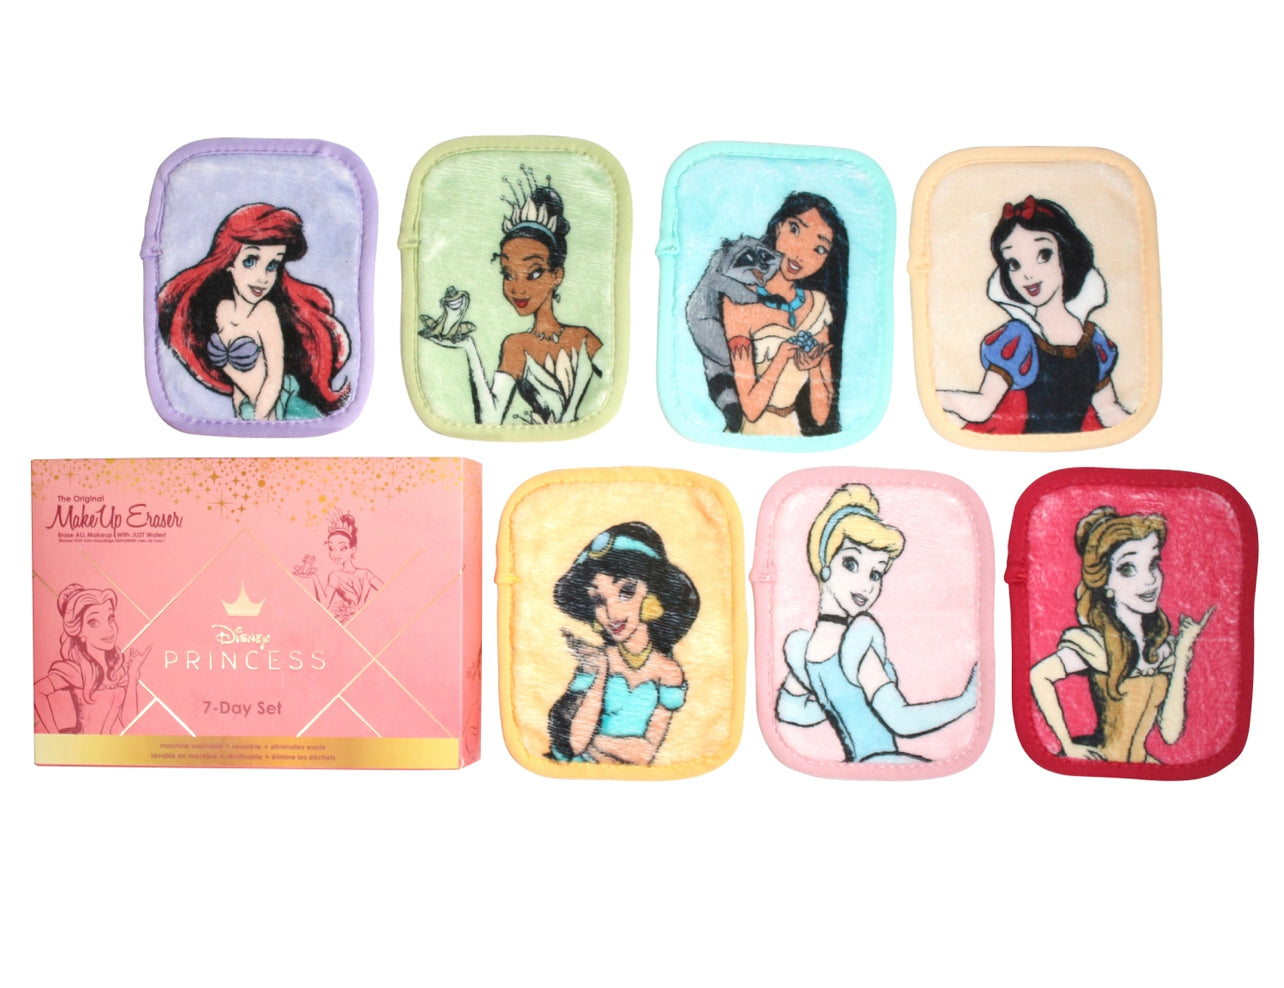 Ultimate Disney Princess The Original Makeup Eraser 7-Day Set © Disney